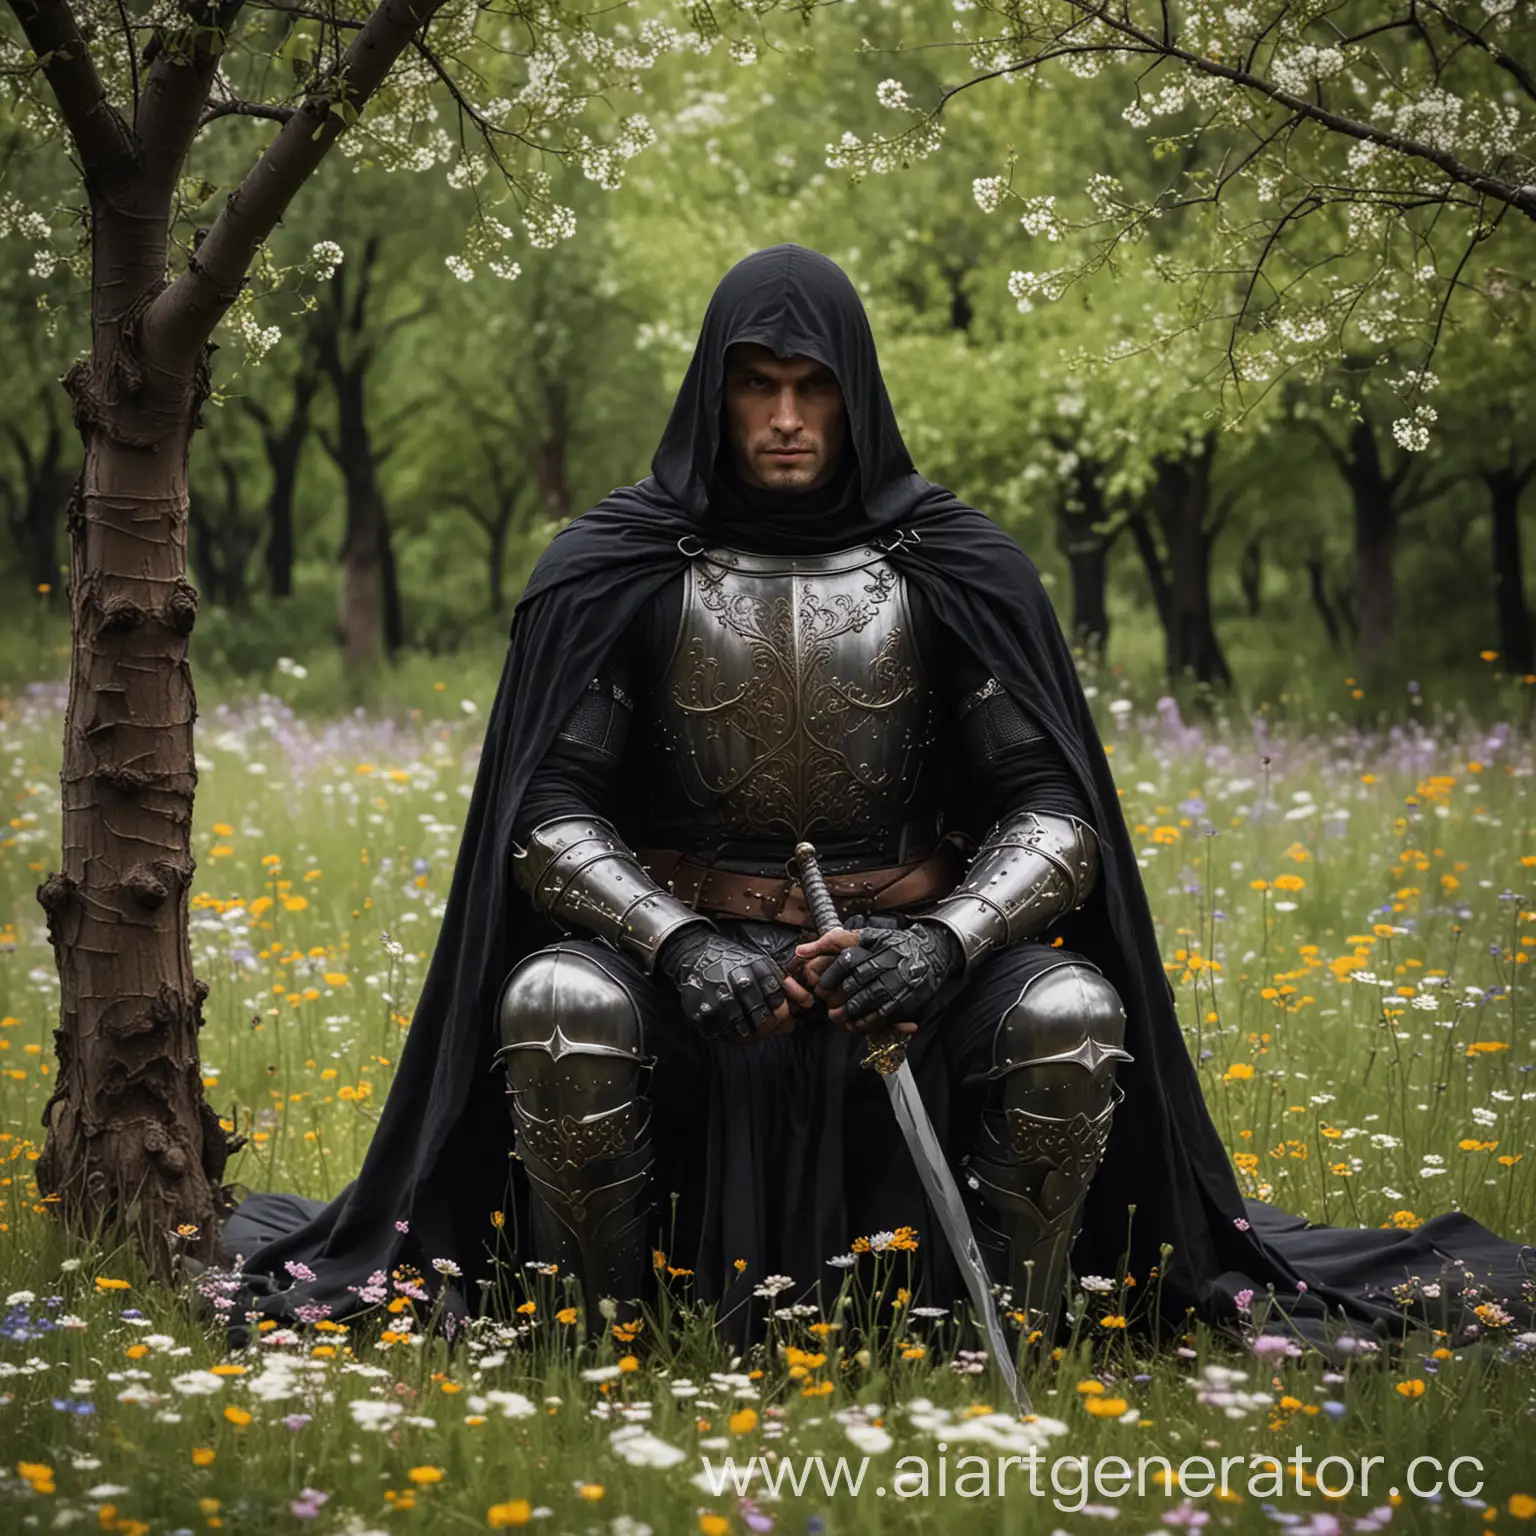 рыцарь в темных доспехах, выоский, мускулистый, с черным плащом сзади и мечом на поясе сидит на цветущей поляне среди деревьев и цветов.
